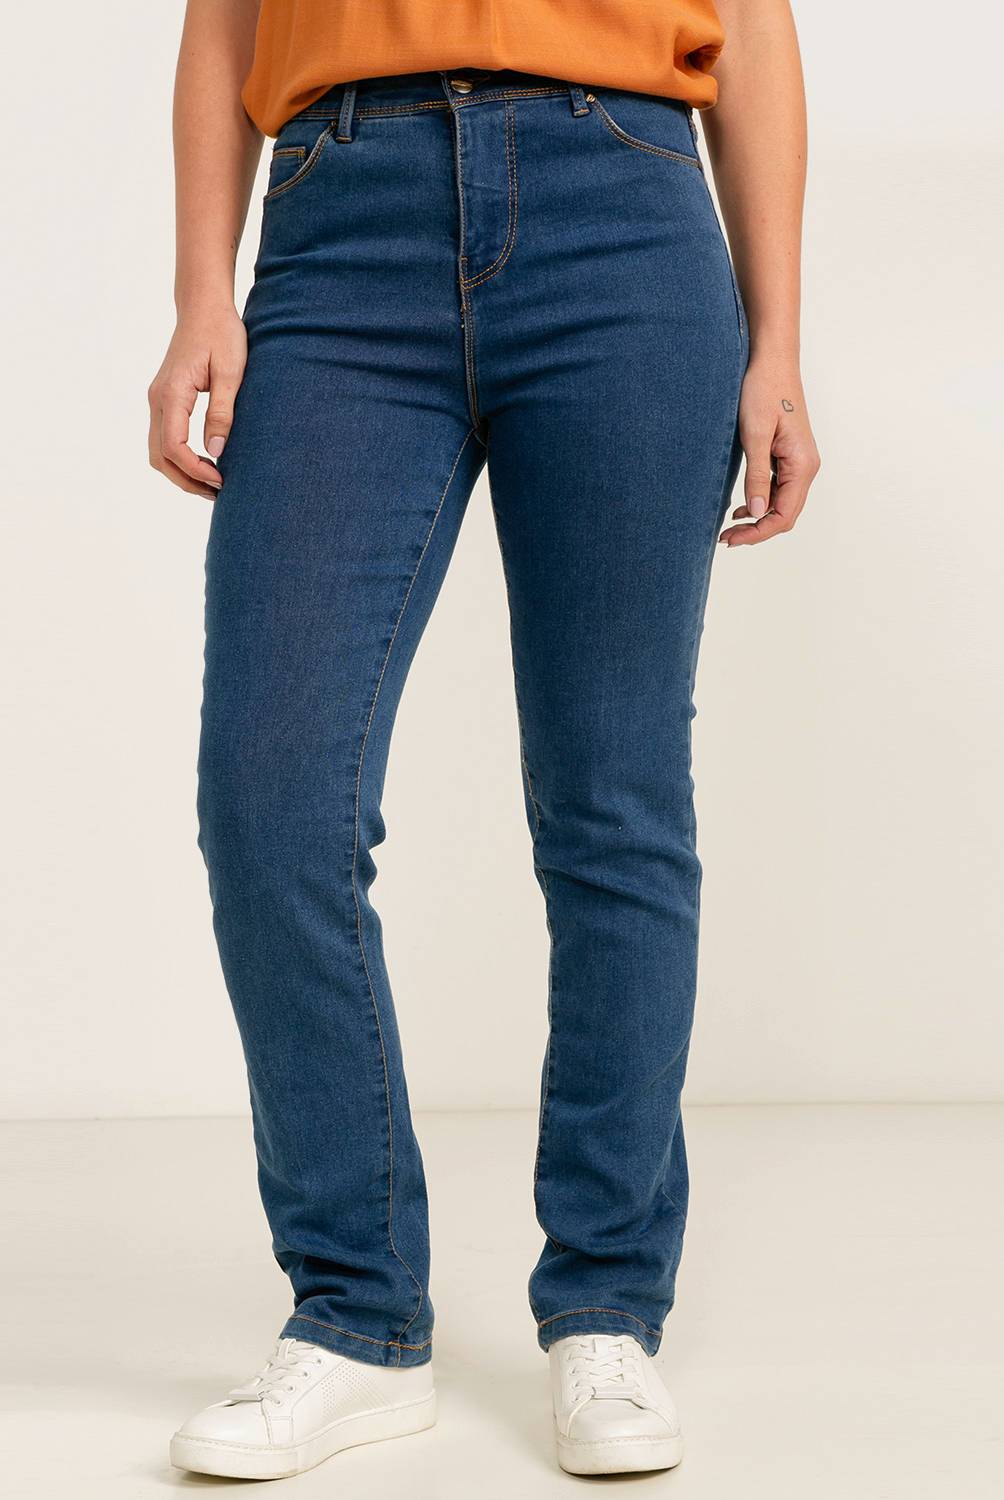 NEWPORT - Jeans Denim Recto Tiro Alto Mujer